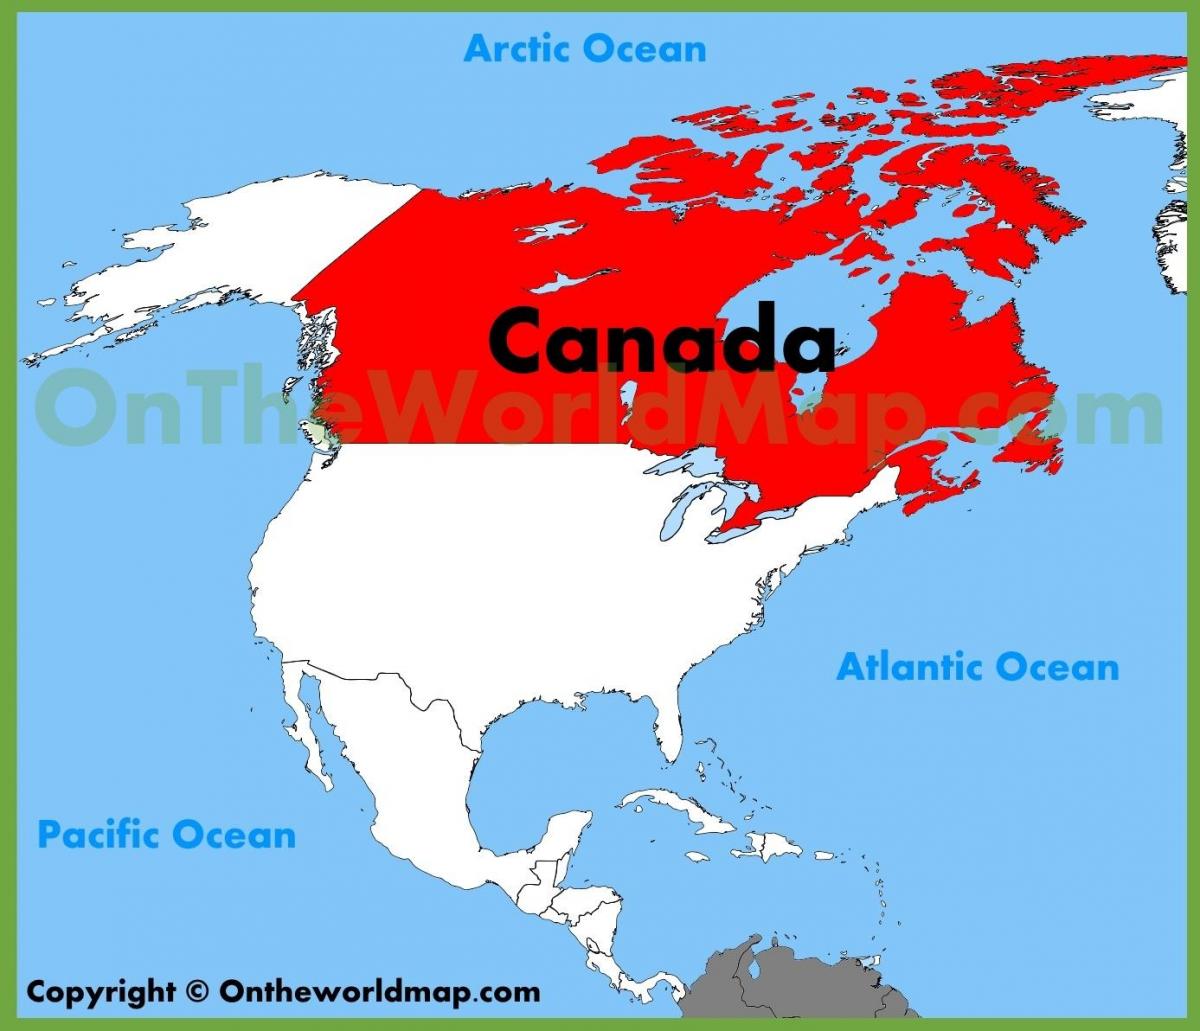 Canada america map